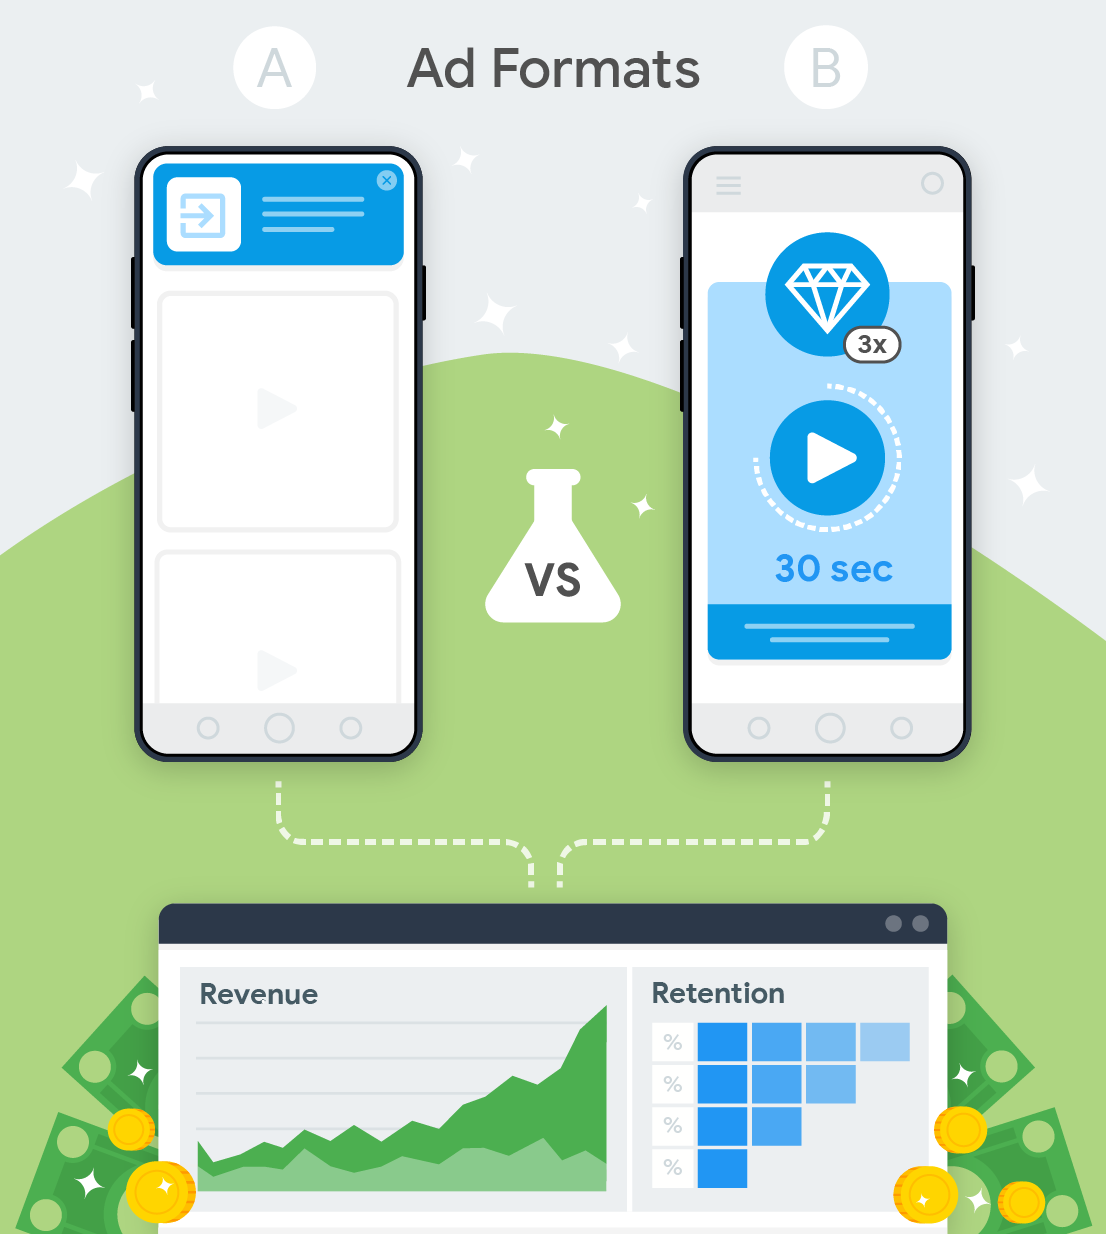 тестирование двух форматов рекламы и их влияние на доход и удержание